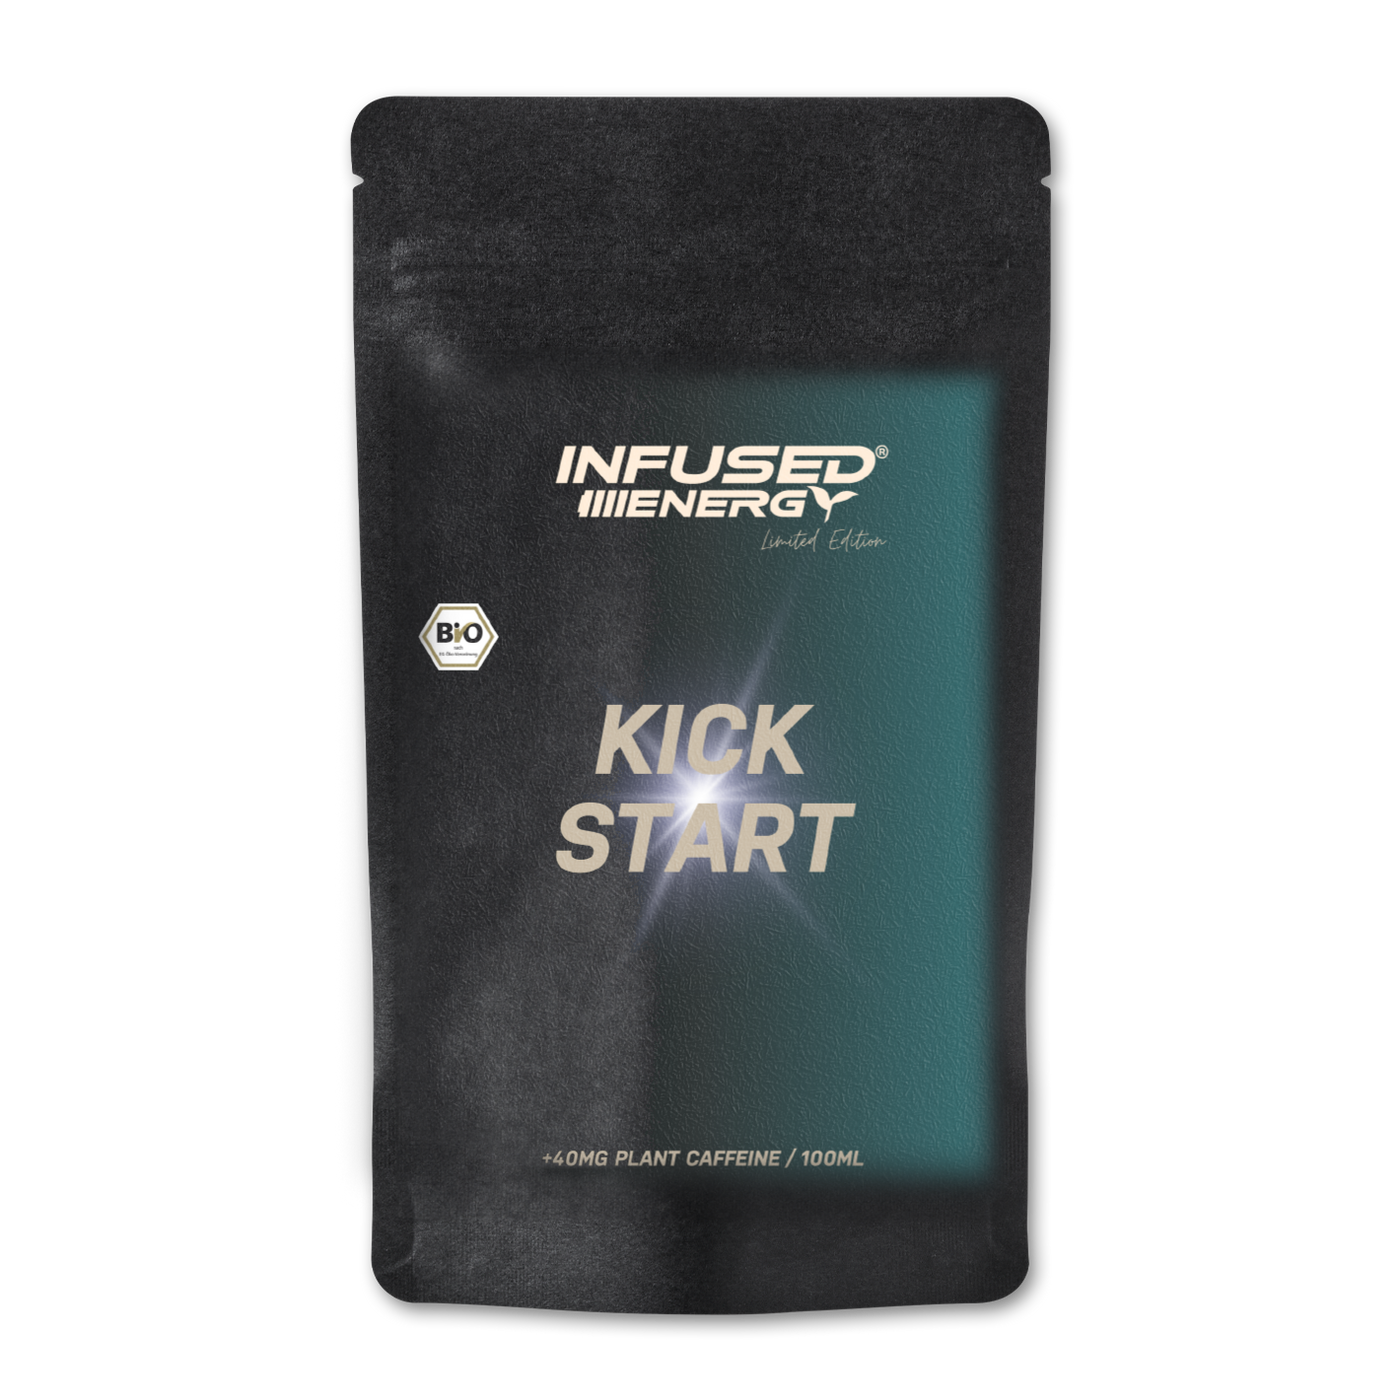 Infused energy - Kick Start